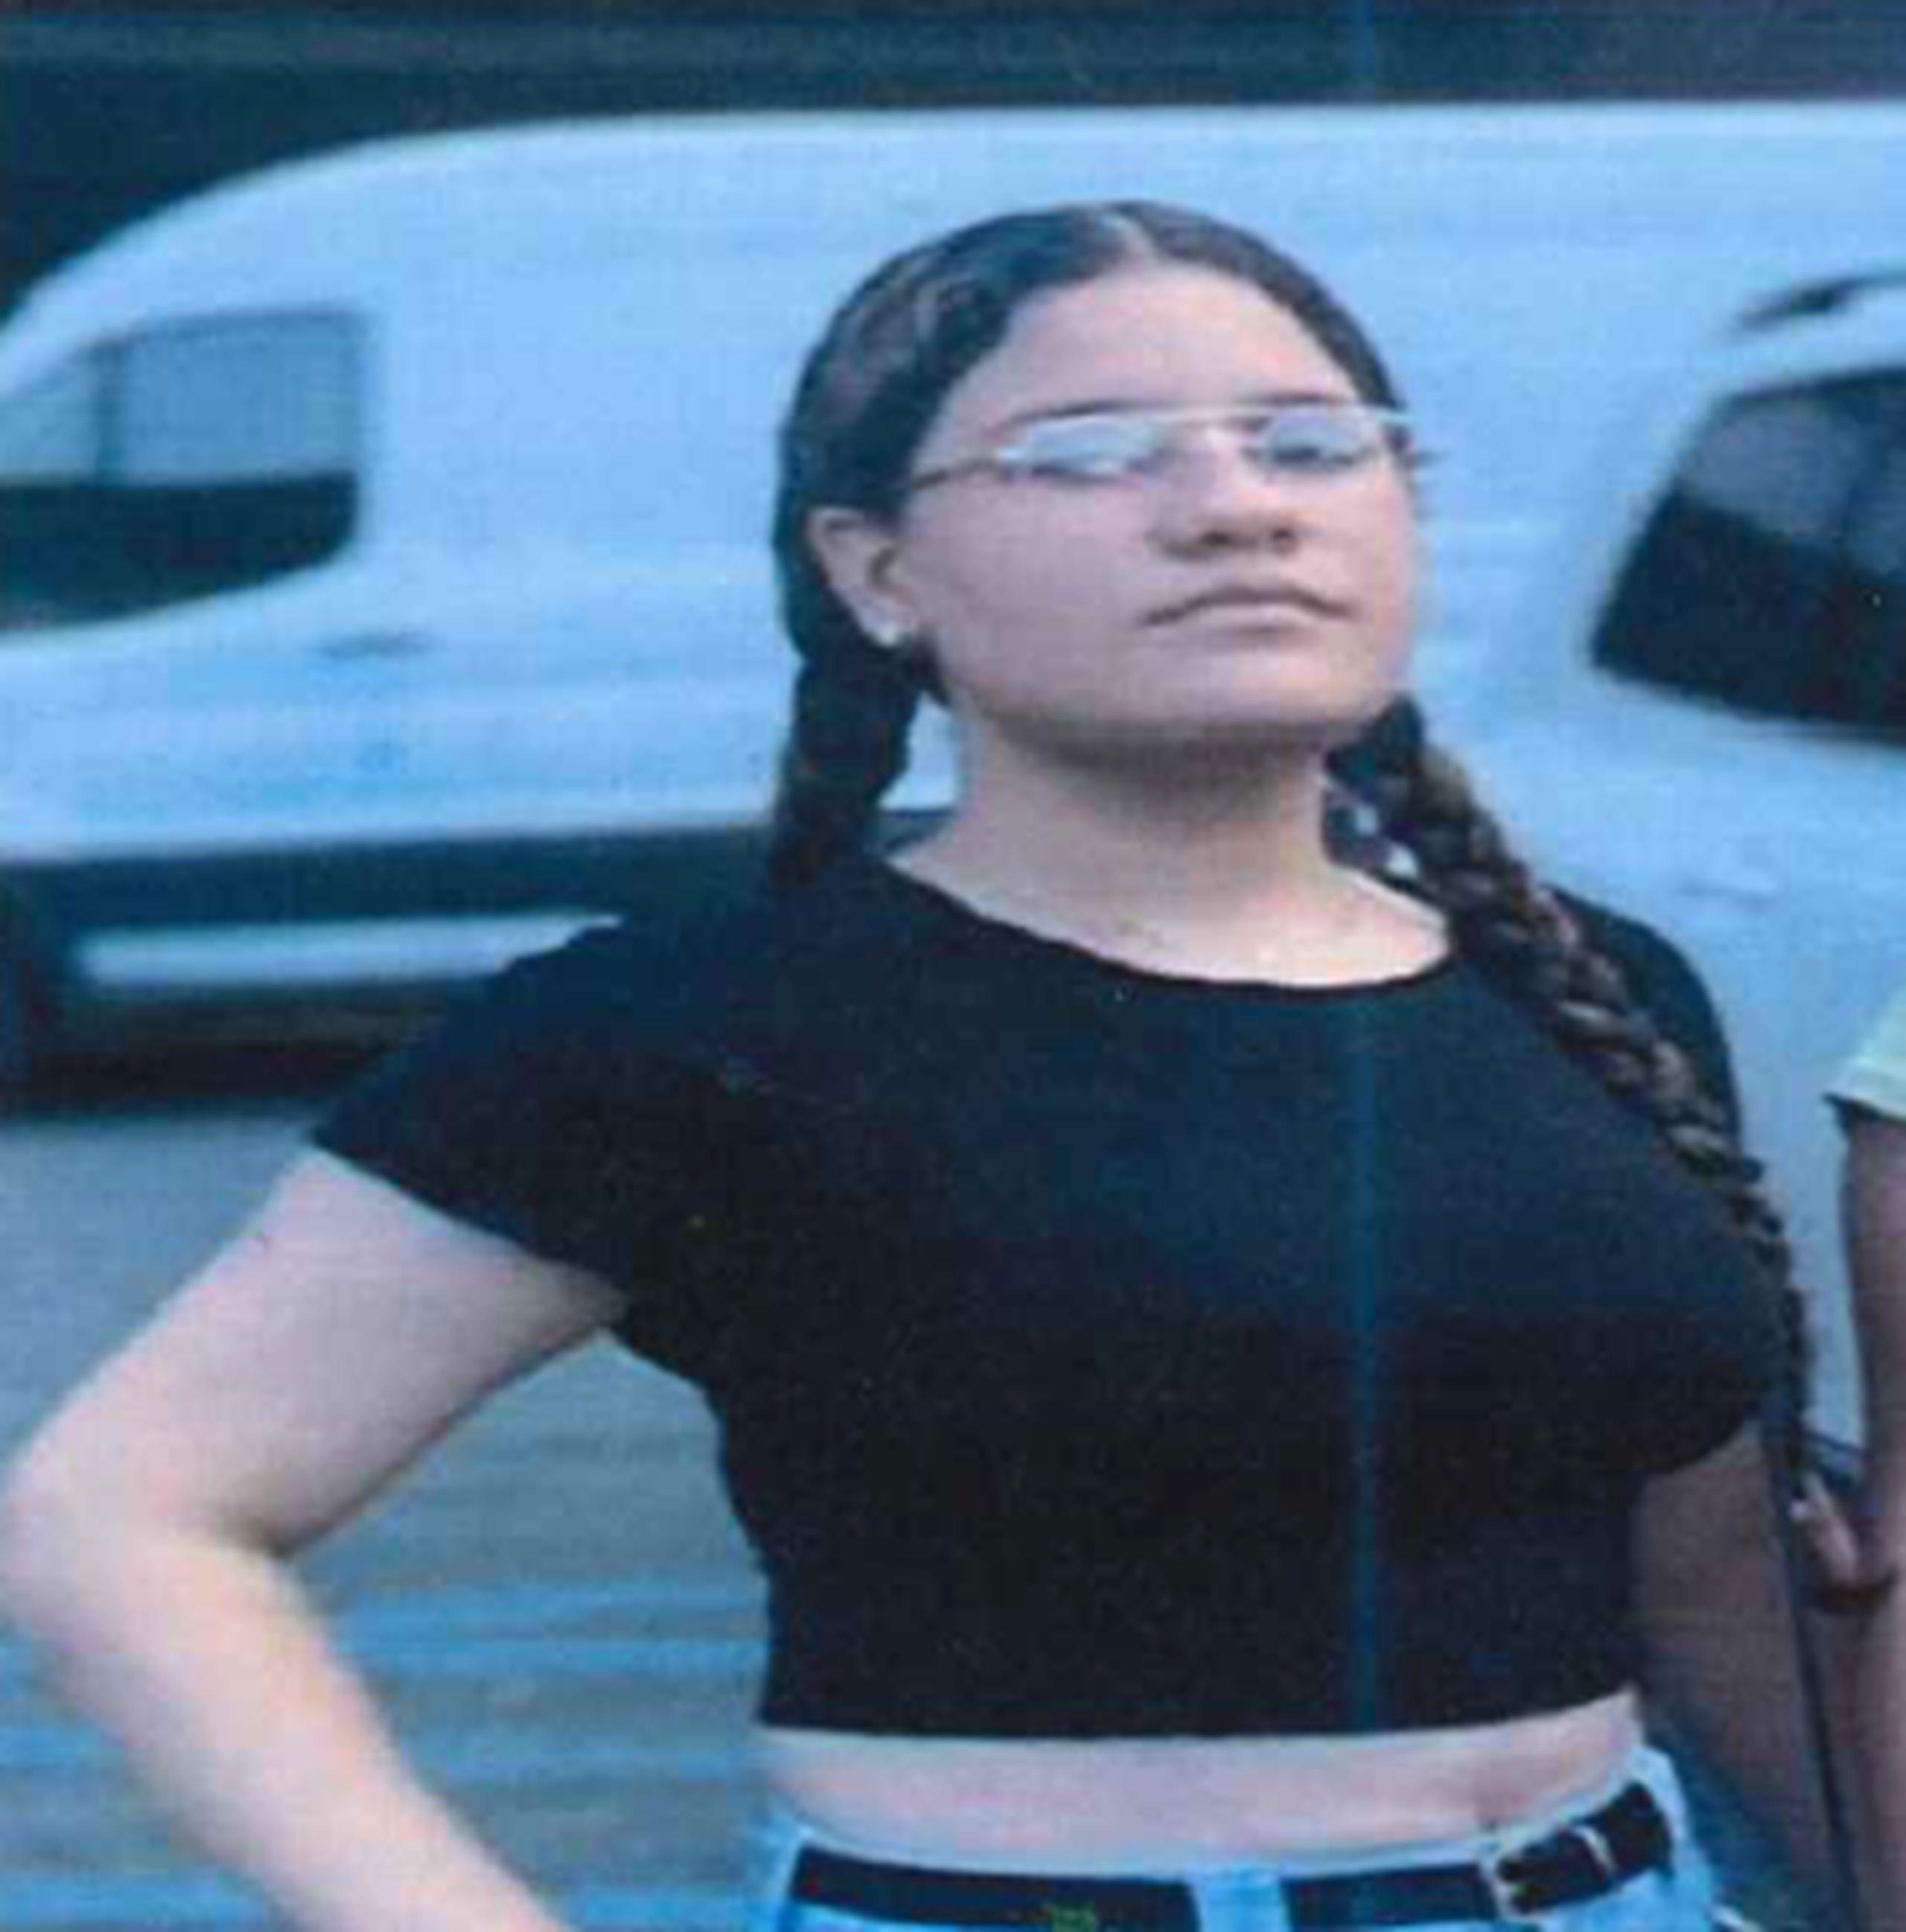 Yainelis González Marrero, de 16 años de edad, fue vista por última vez el 13 de noviembre en los predios de la urbanización Perelló, en Humacao. Si la ha visto llame a la línea confidencial del Negociado de la Policía al (787) 343-2020.